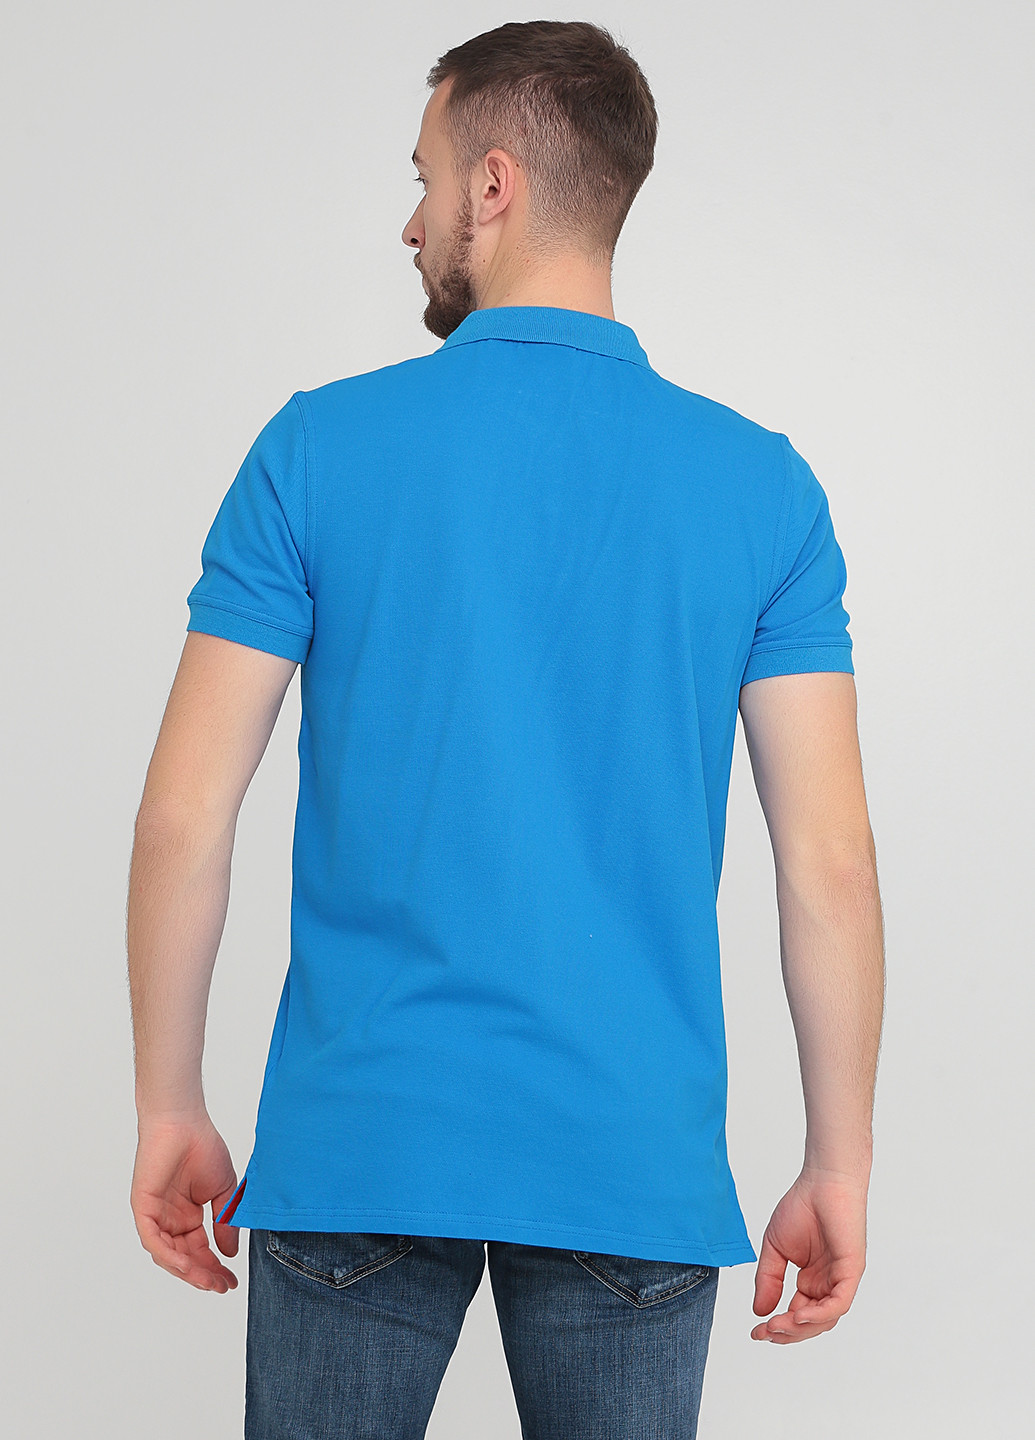 Синяя футболка-тенниска для мужчин Gant однотонная